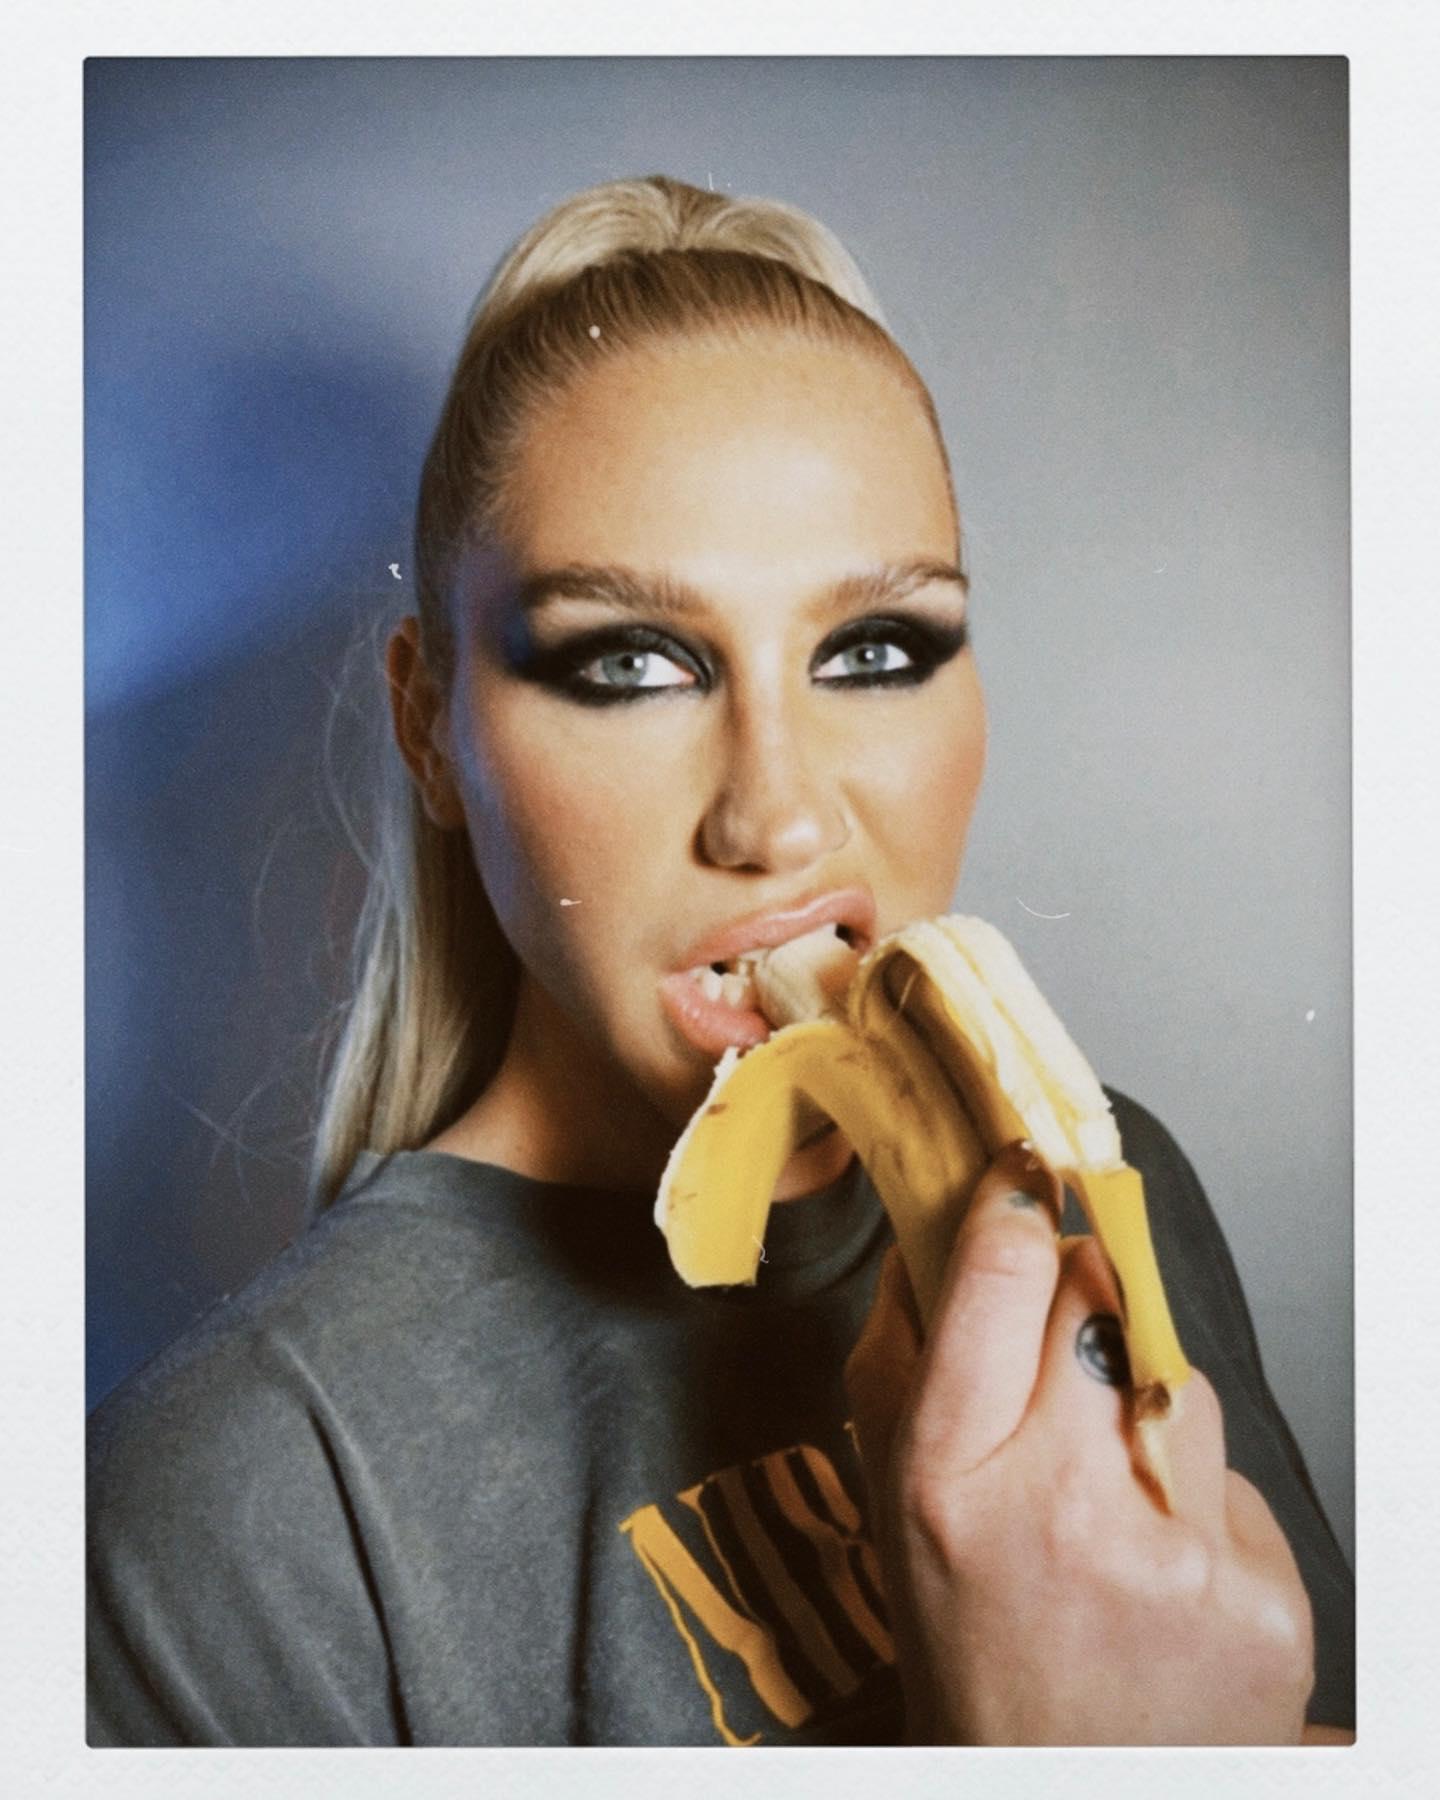 Kesha eats a banana